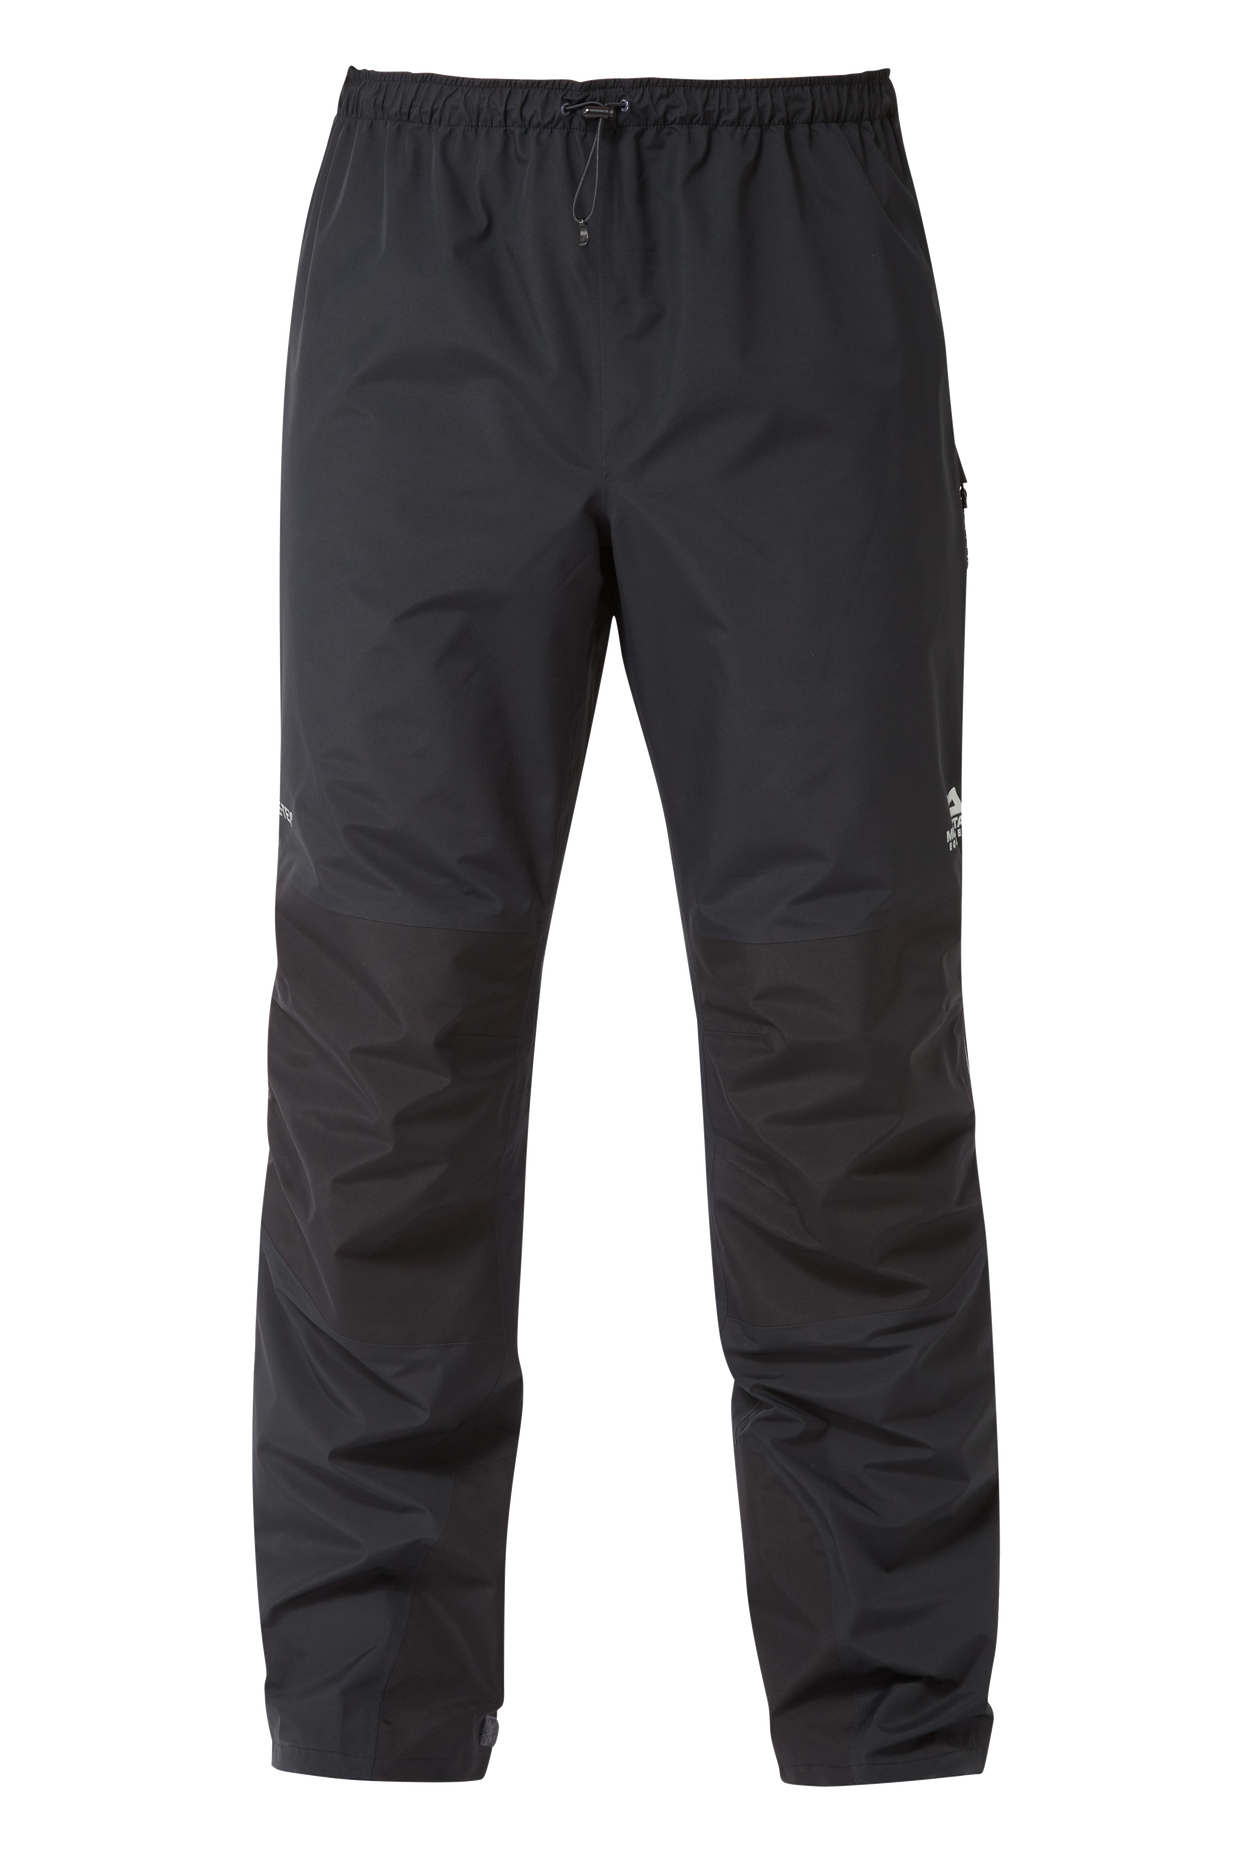 Mountain Equipment pánské nepromokavé kalhoty Saltoro Pant - zkrácené Barva: black, Velikost: S